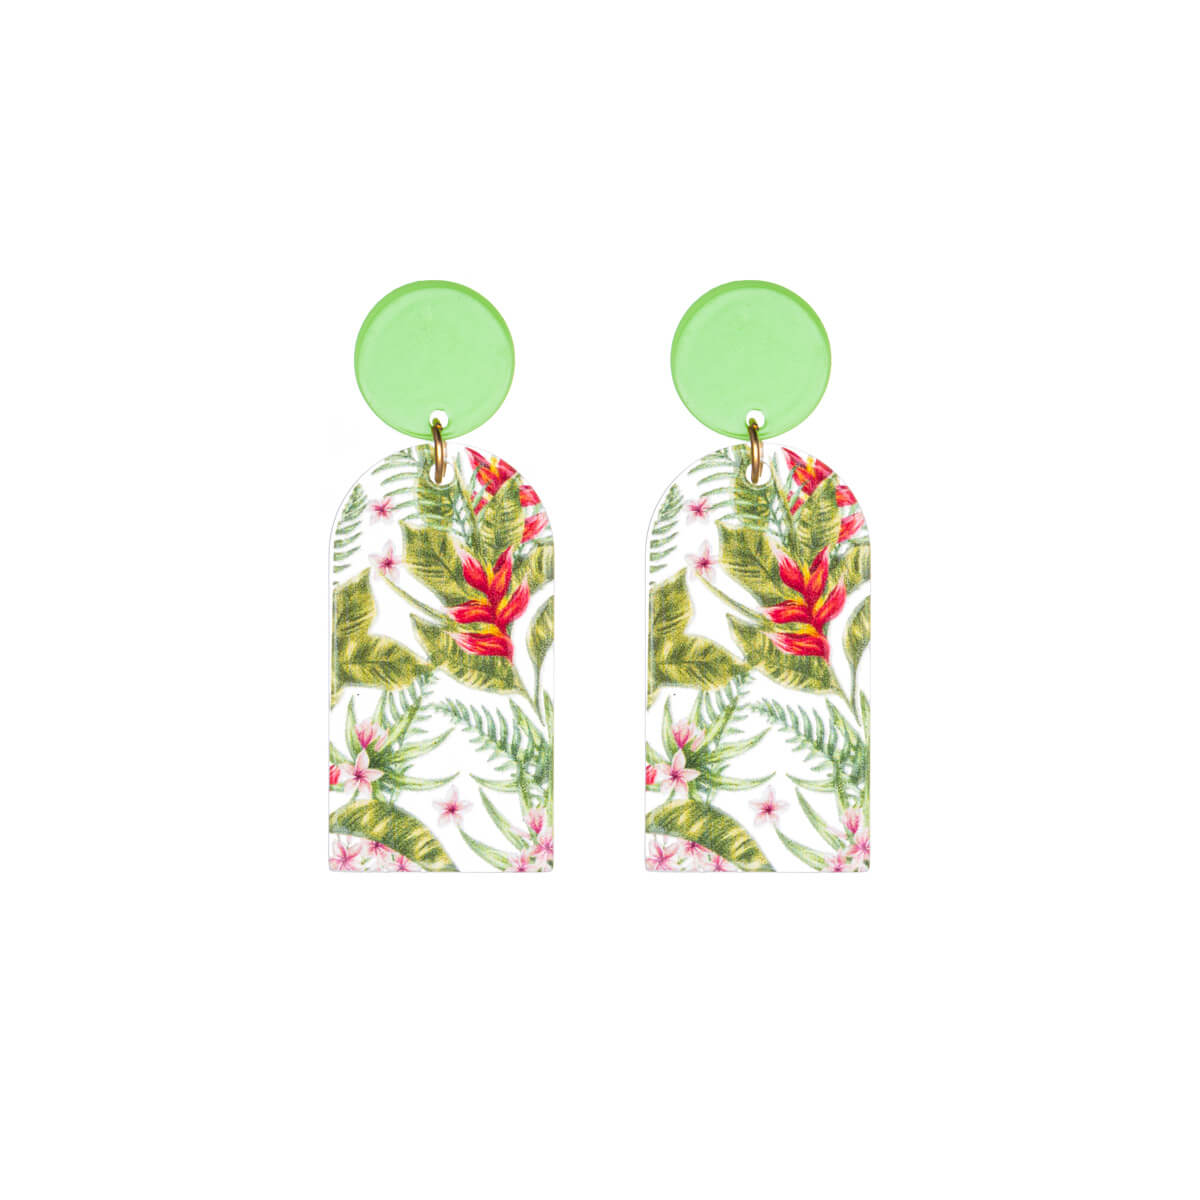 Flower garden earrings